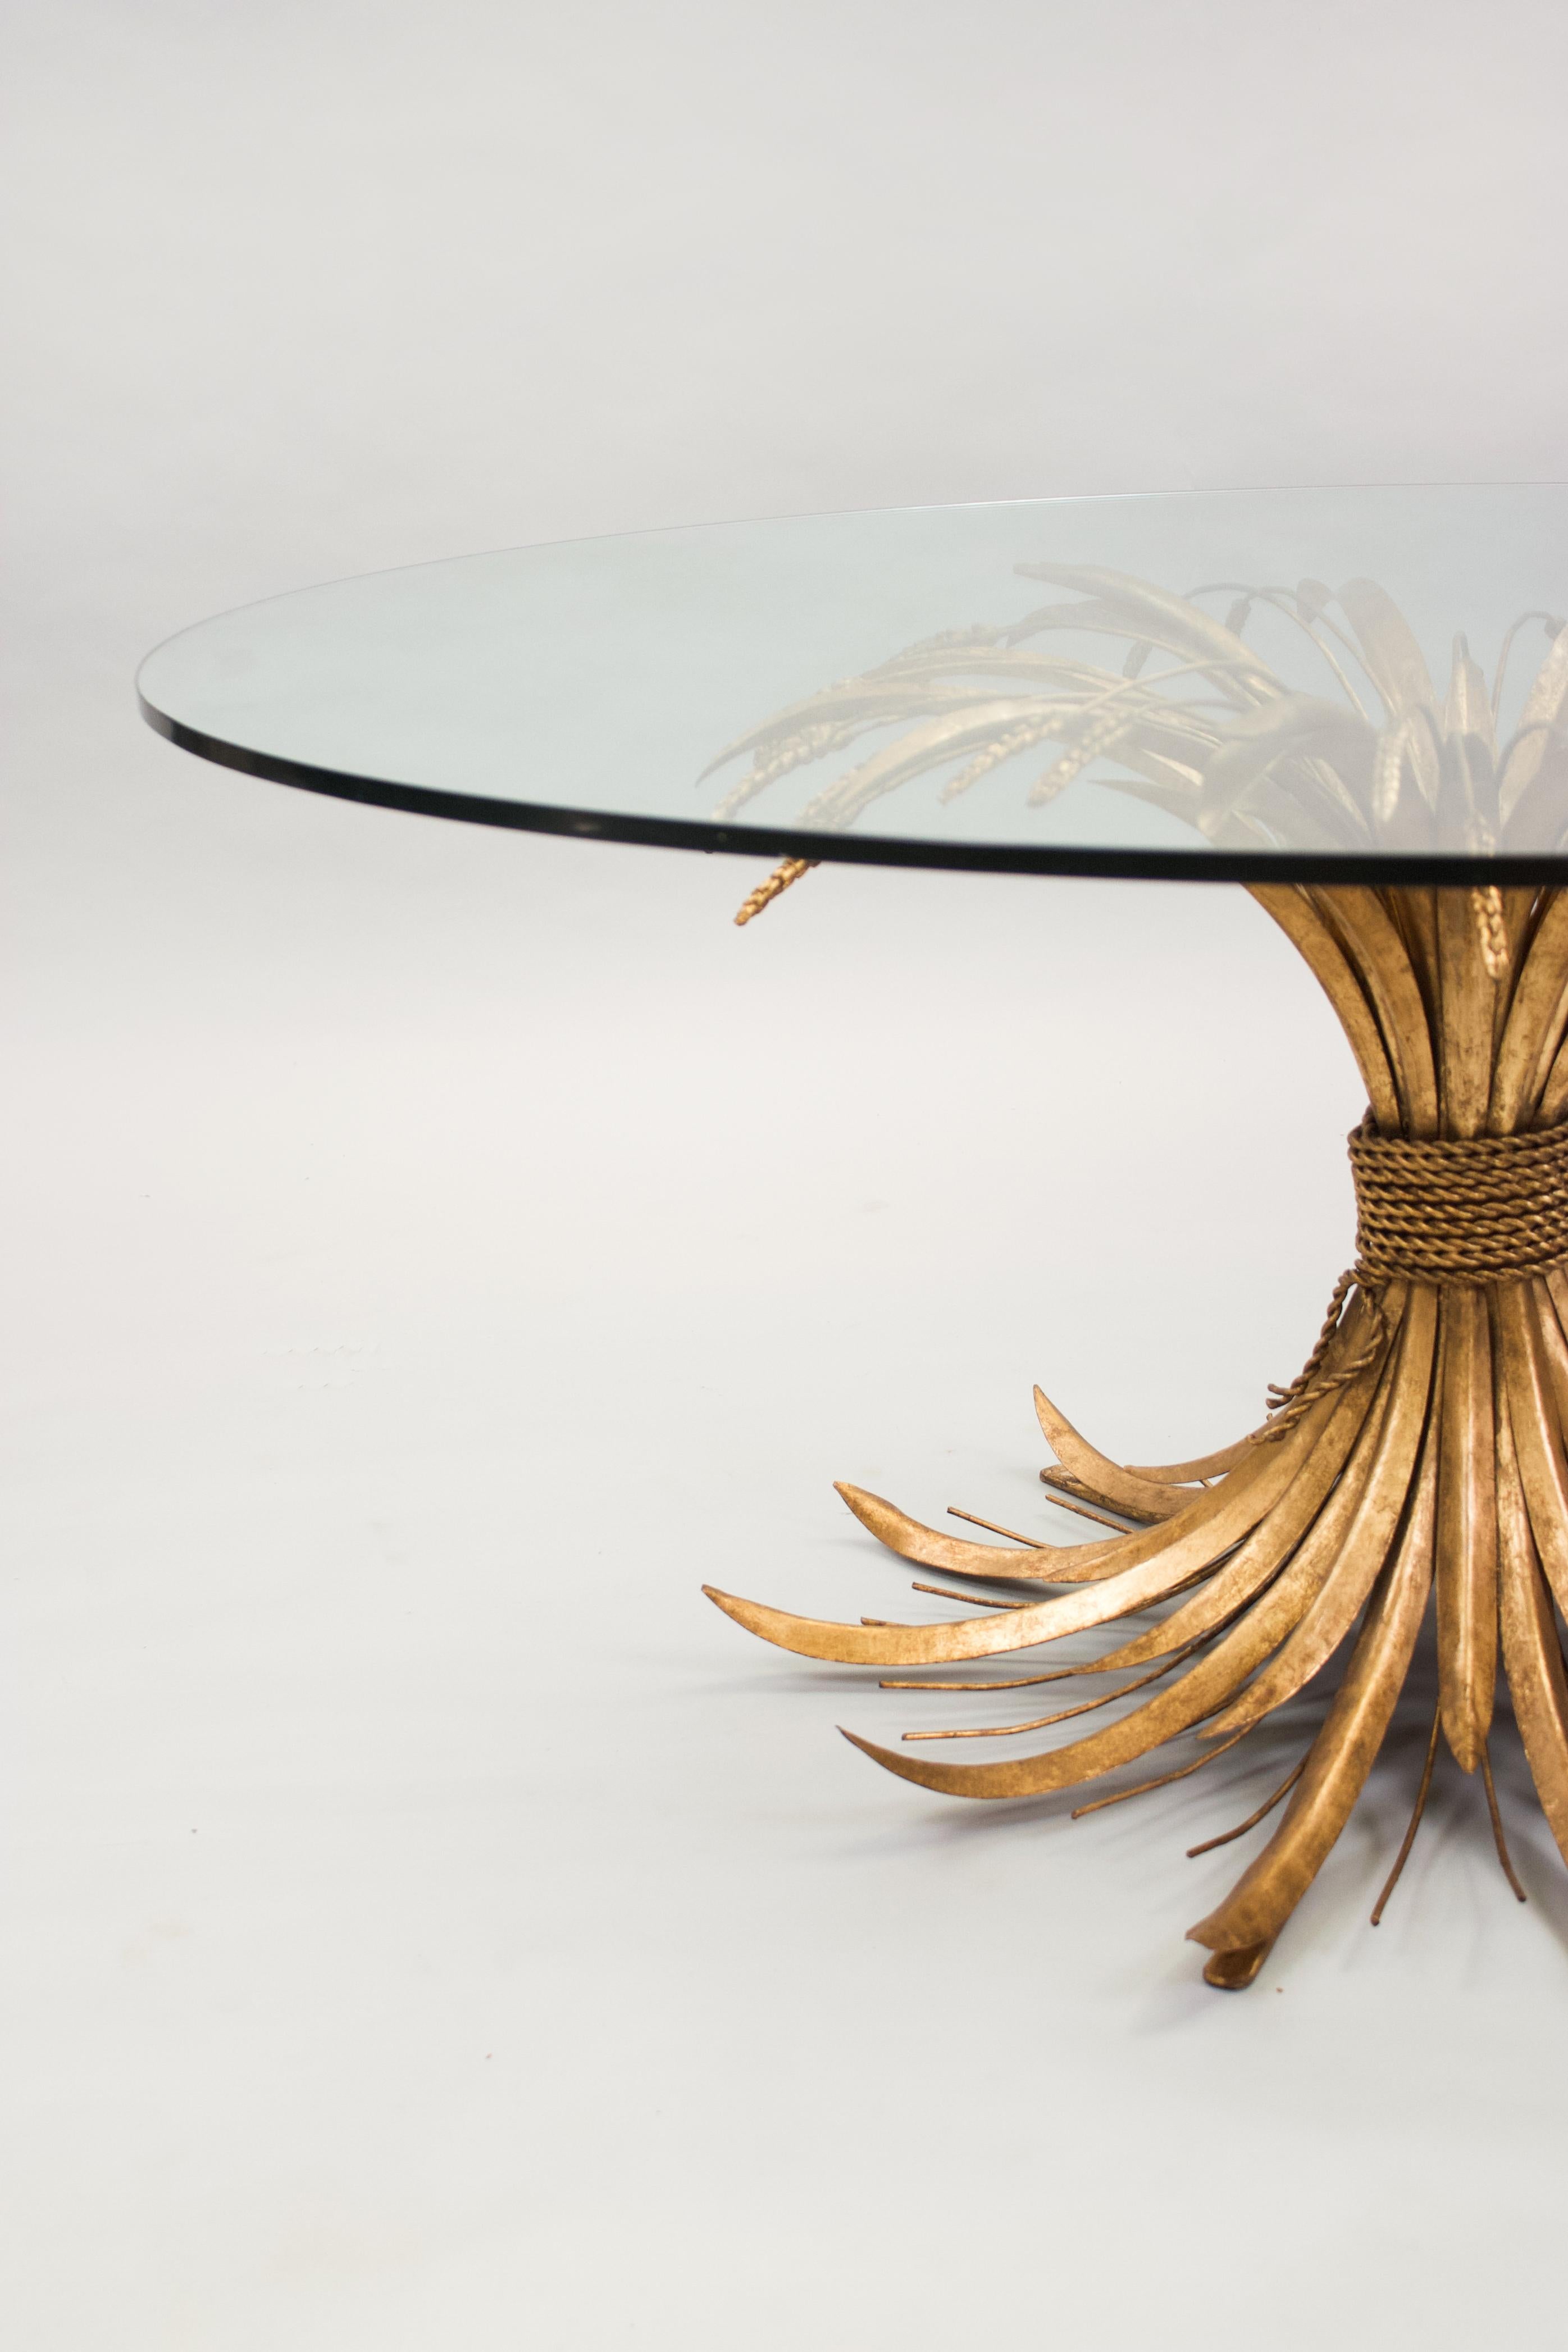 Ein außergewöhnlich großer, runder, niedriger Tisch aus vergoldetem Metall, der eine Weizengarbe darstellt, mit Glasplatte. Circa 1960. Ähnlicher Tisch im Appartement von Coco Chanel. 

Abmessungen
u2028H 57cm (22